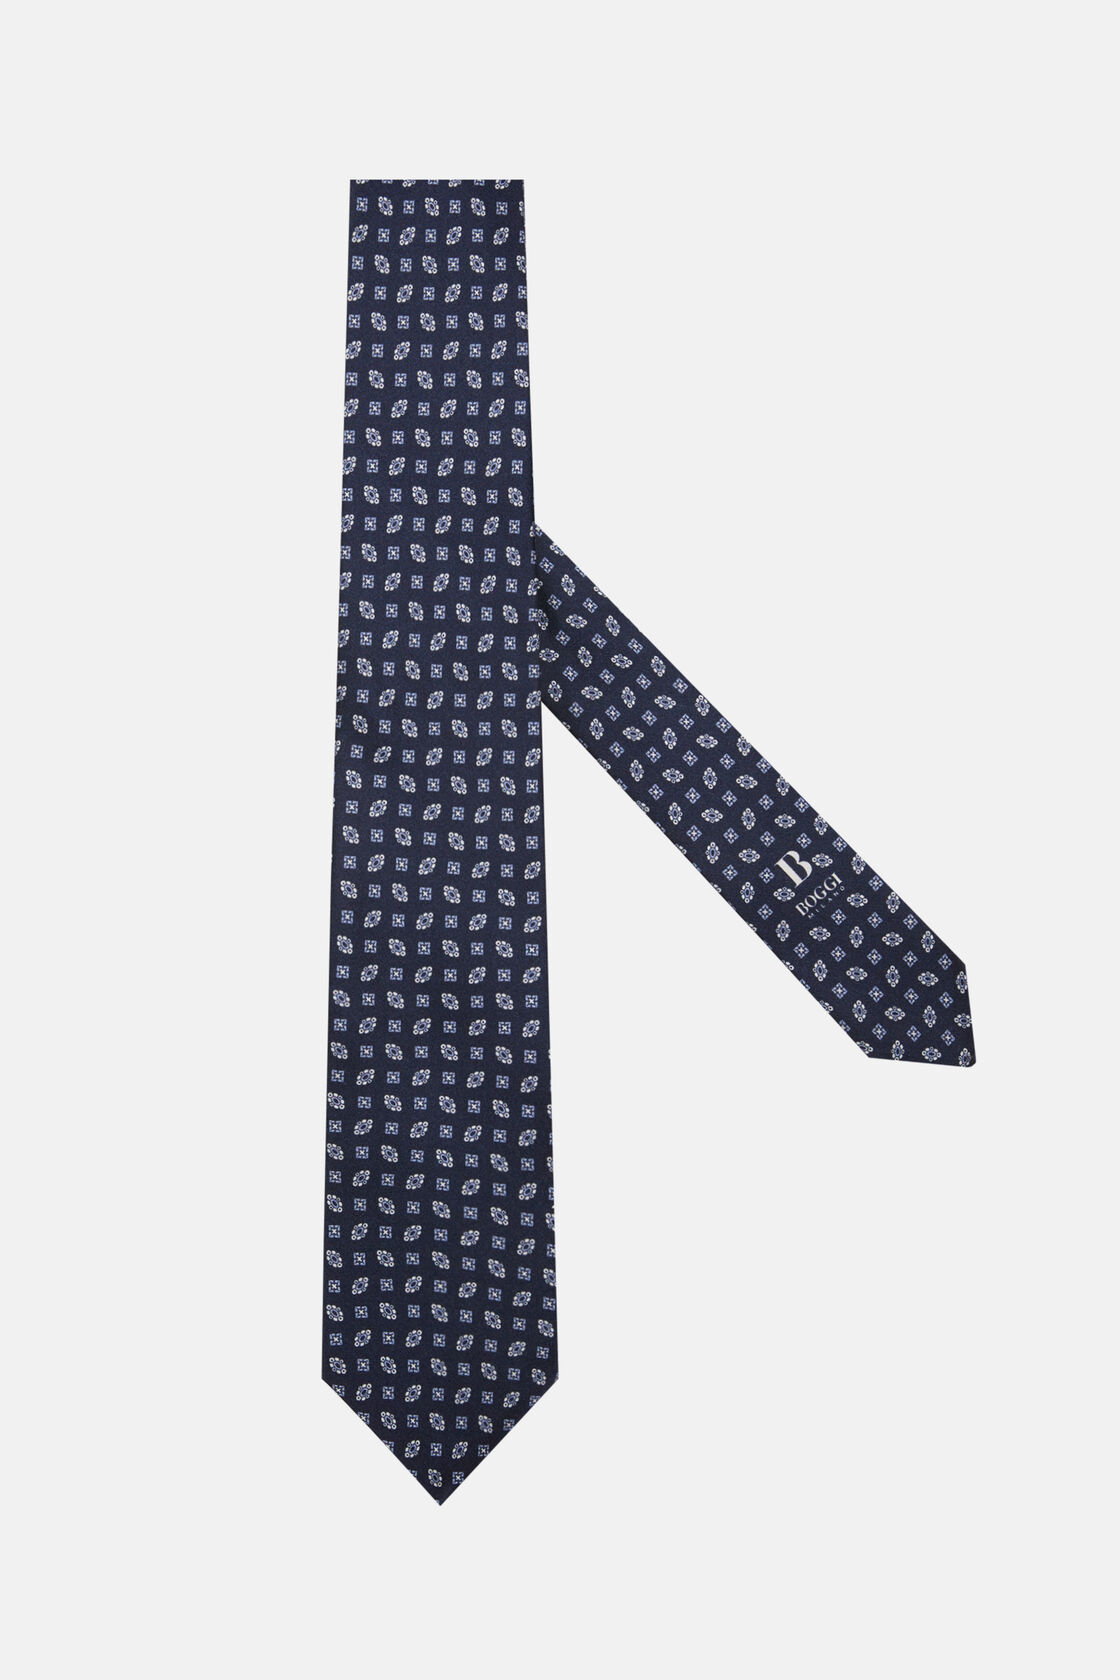 Cravate Motif Géométrique En Soie, bleu marine, hi-res